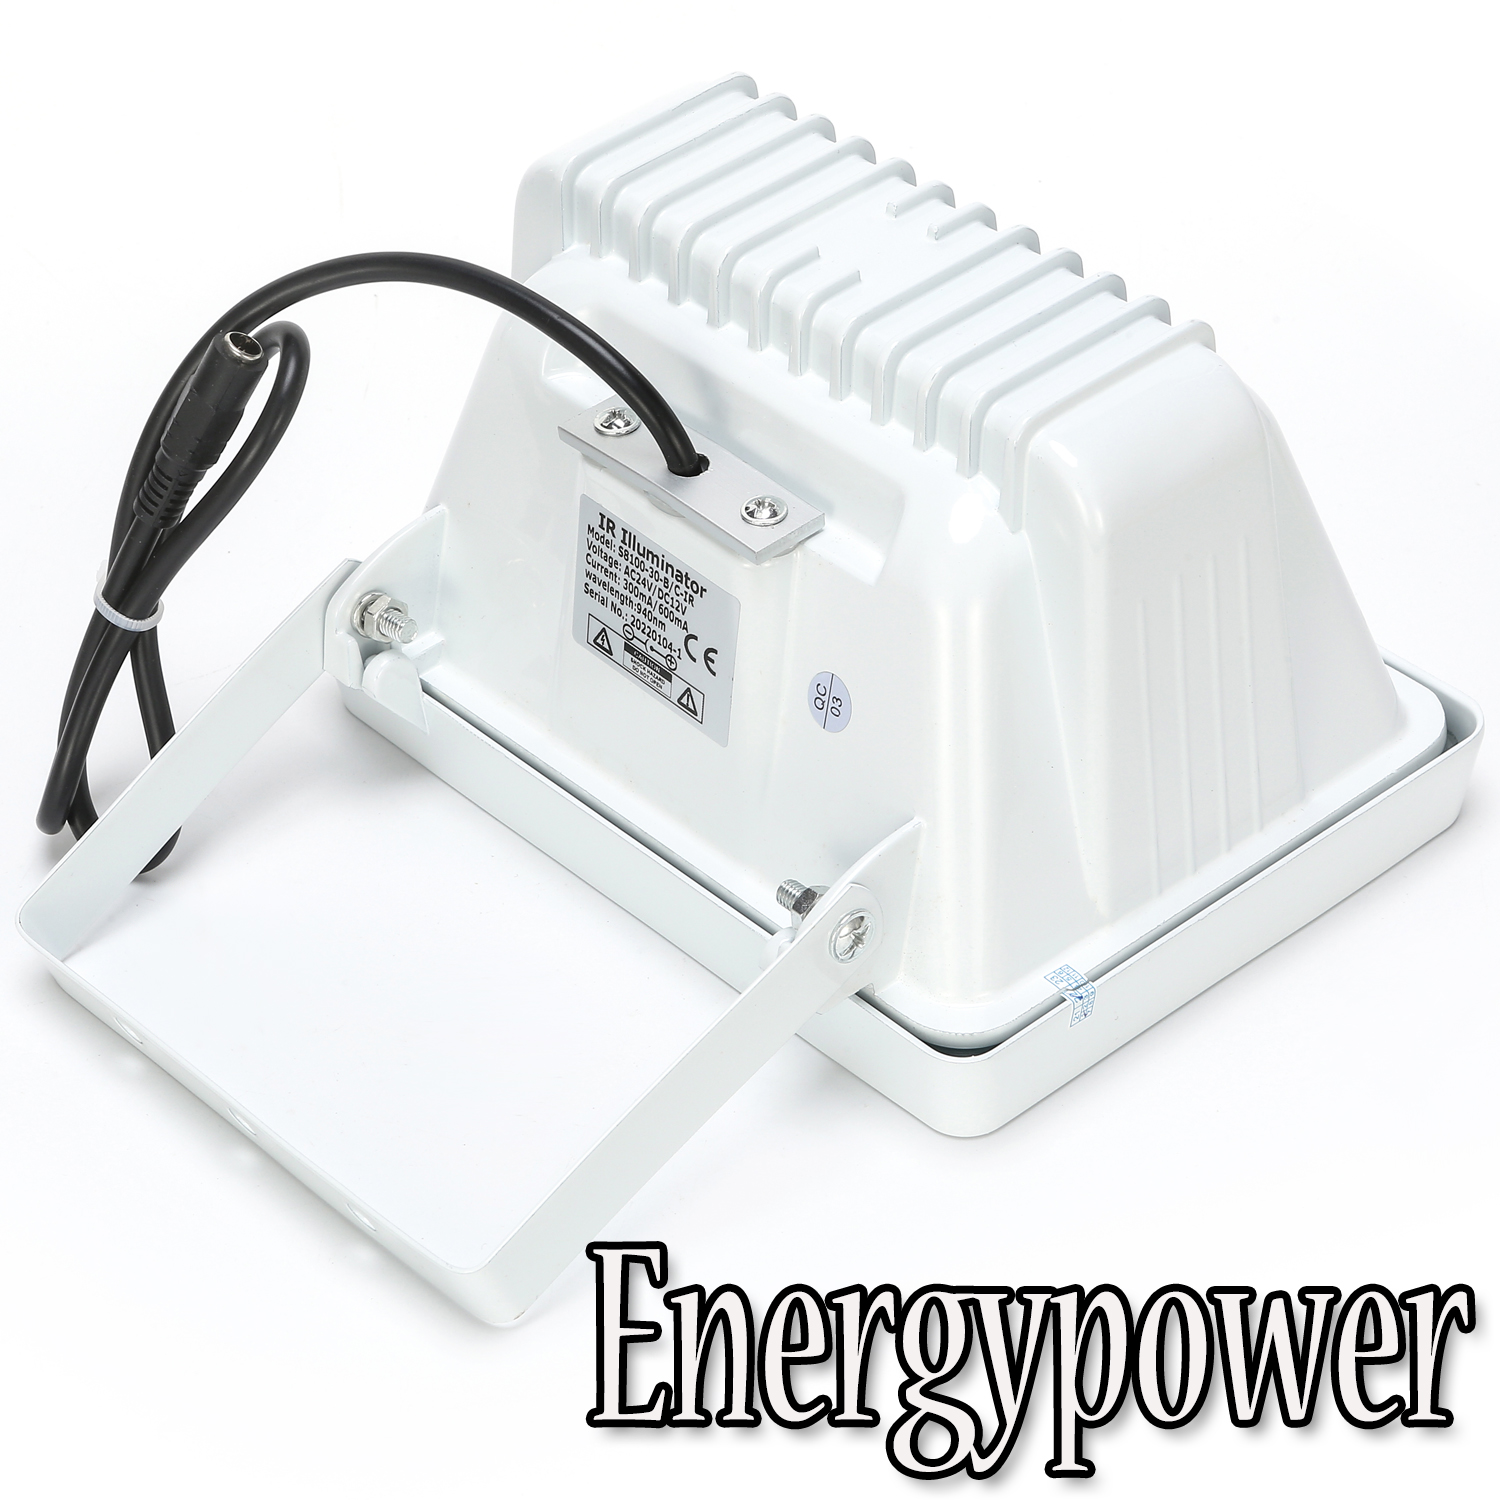 素敵な EnergyPower 赤外線ライト SA3-IR 850nm 赤外線照射距離40